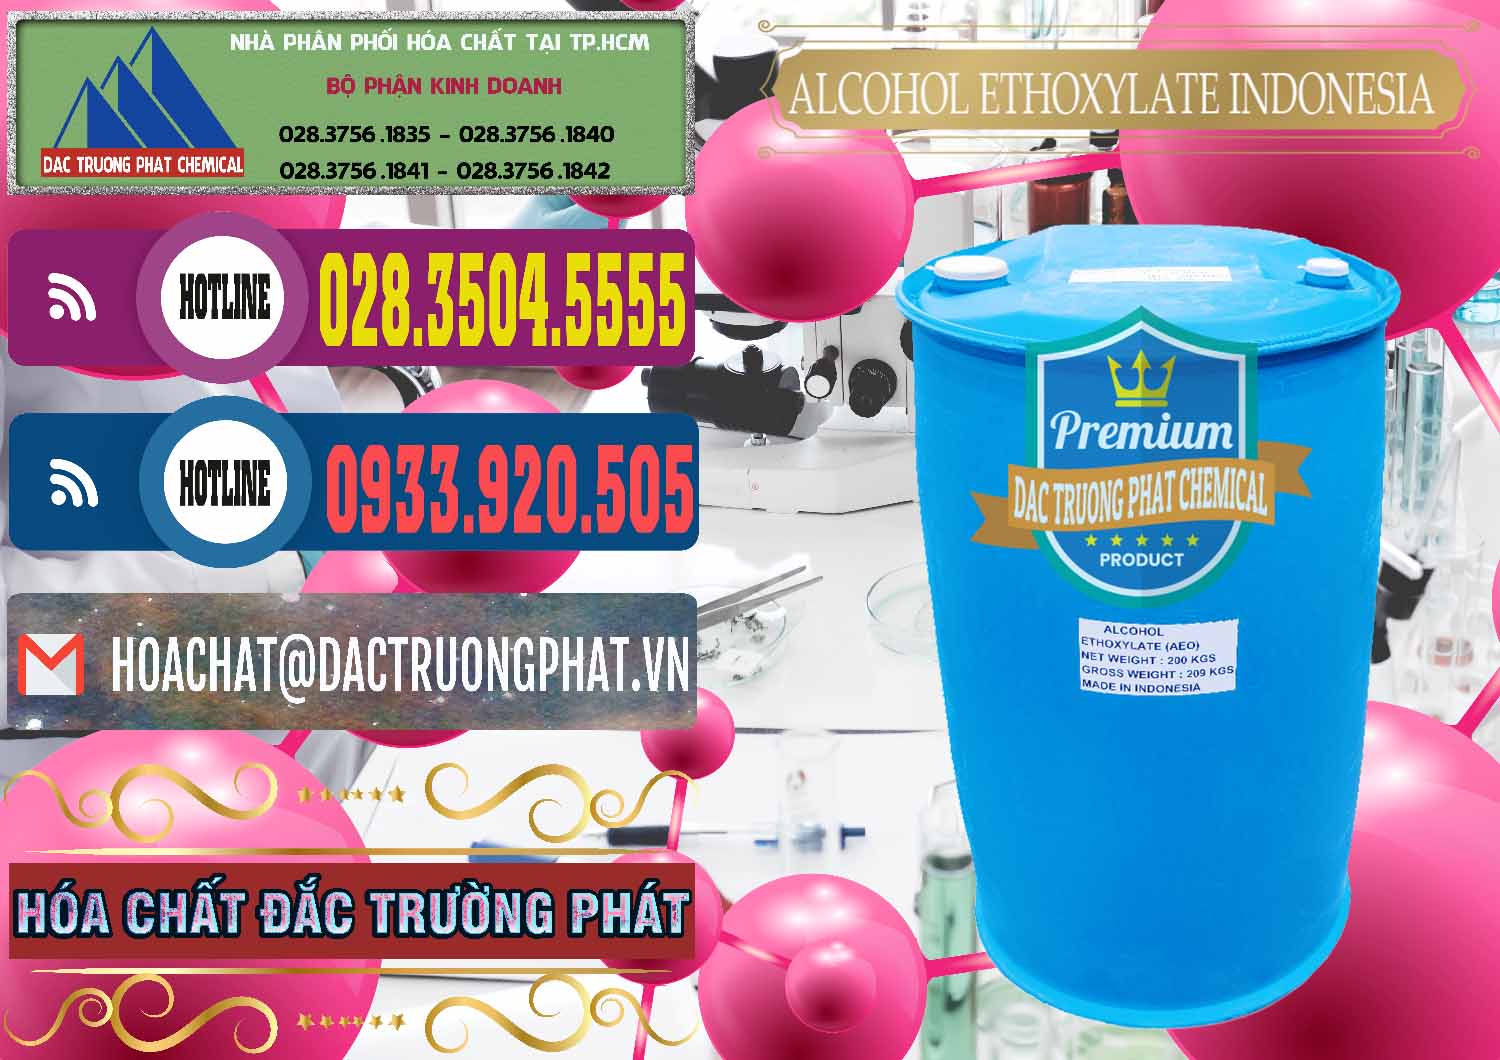 Cty chuyên bán & cung cấp Alcohol Ethoxylate Indonesia - 0308 - Cty phân phối & cung cấp hóa chất tại TP.HCM - muabanhoachat.com.vn